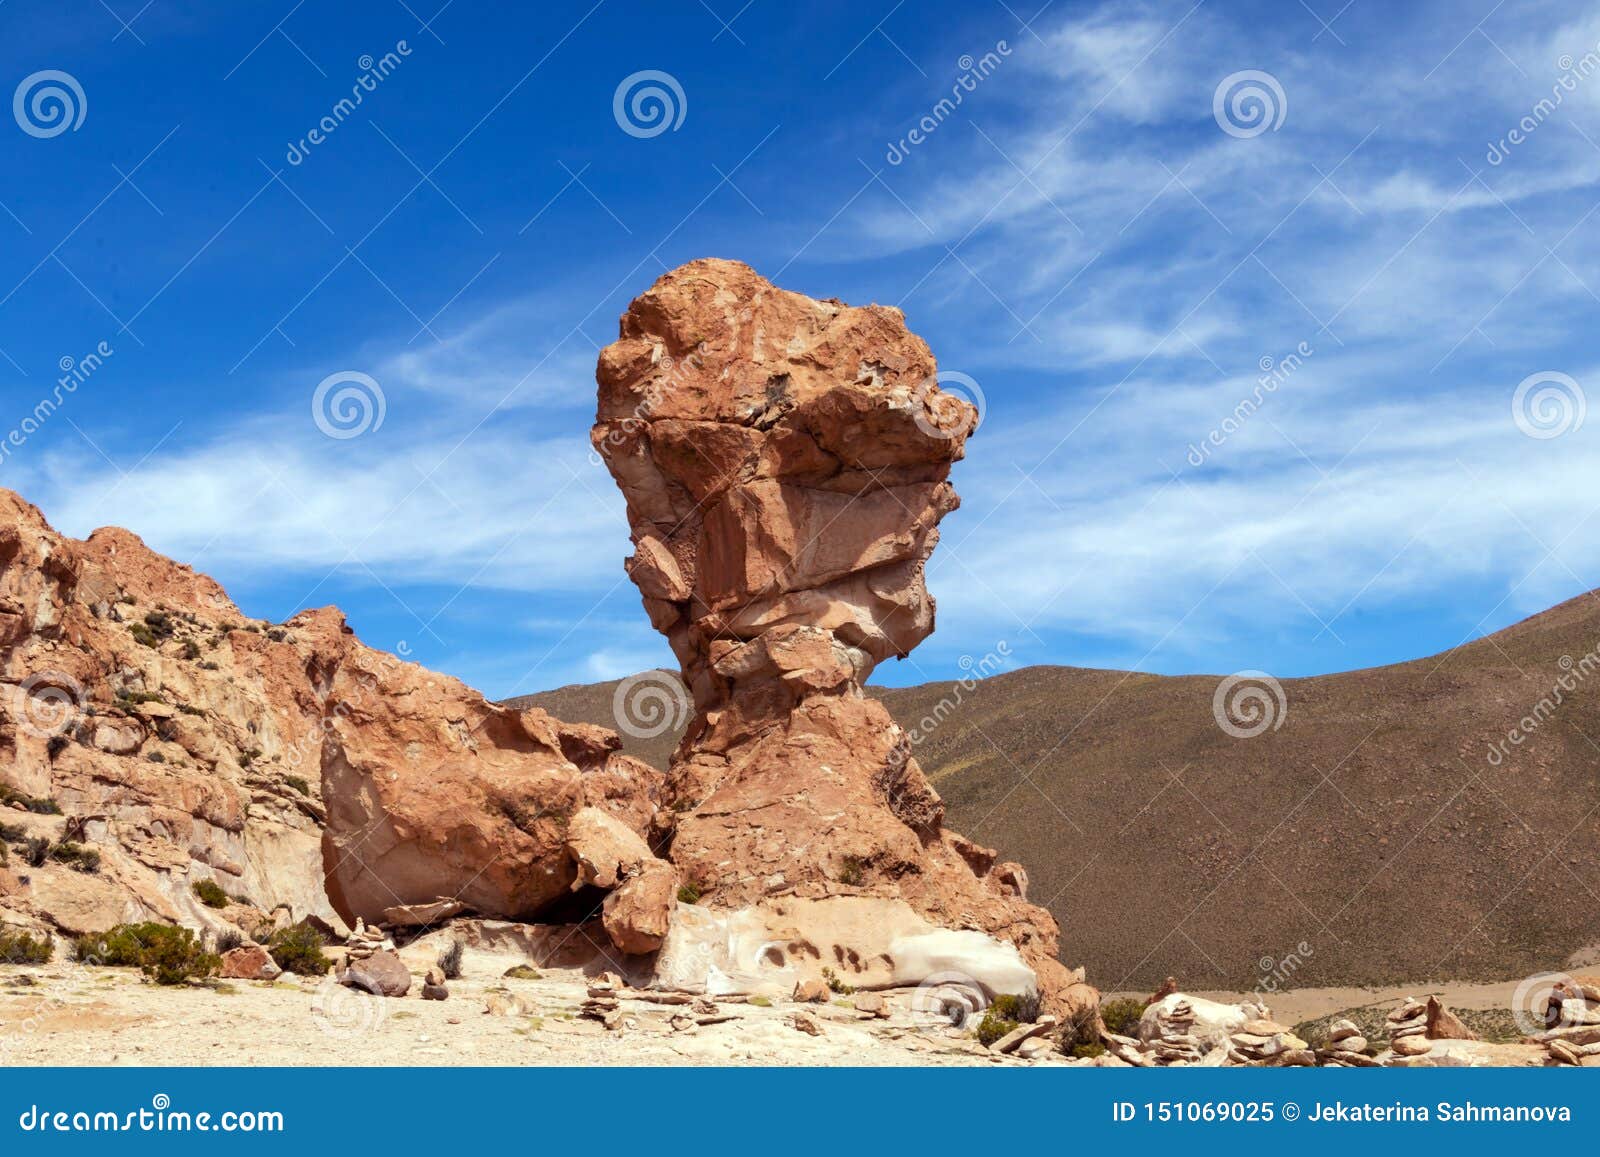 rock formation called copa del mondo or world cup in the bolivean altiplano - potosi department, bolivia